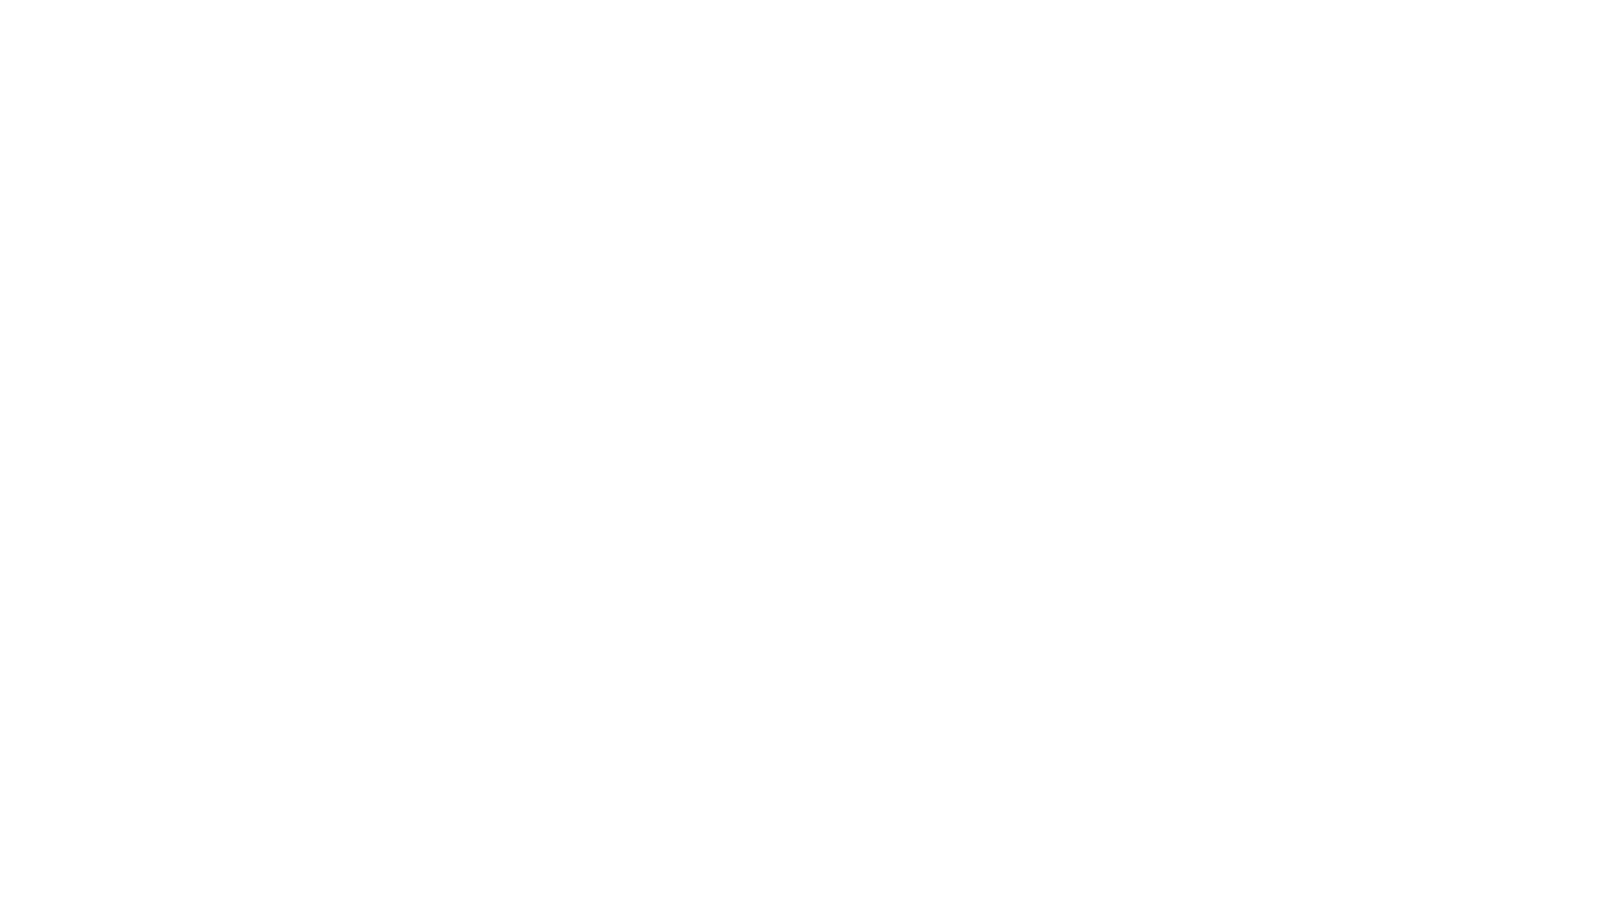 श्री हनुमान जन्मोत्सवामित्त मंगळग्रह मंदिरात विशेष पंचामृत अभिषेक
अमळनेर : 
येथील मंगळग्रह मंदिरात श्री हनुमान जन्मोत्सवानिमित्त २३ एप्रिल रोजी पहाटे ४ ते सकाळी ६.२० या वेळेत मंगळेश्वर पंचमुखी हनुमानाच्या मूर्तीवर  मुख्य यजमान जळगावचे माजी उपमहापौर   डॉ. आश्विन सोनवणे, सुपरिचित बांधकाम व्यावसायिक इंजि.राहुल सोनवणे, ऍड. अमित सोनवणे व सूर्या सोनवणे यांच्या शुभहस्ते विशेष पंचामृत महापूजा करण्यात आली.
प्रारंभी सर्व मुख्य यजमानांनी गणेशपूजन केले. त्यानंतर मंगळेश्वर पंचमुखी हनुमानाच्या मूर्तीवर पंचामृत करण्यात आला. त्यानंतर विधीवत हनुमान जन्मोत्सव सोहळा झाला.यावेळी रामरक्षा स्तोत्र, हनुमान चालिसा पठण तसेच भाविकांकडून पुष्पवृष्टी होऊन पाळणा हलवत भक्तिमय व मंगलमय वातावरणात ‘श्रीराम जय राम जय जय राम’, ‘संकटमोचन हनुमान की जय’, असा जयघोष करण्यात आला. त्यानंतर महाआरती होऊन रात्री उशिरापर्यंत भाविकांना विशेष तीर्थप्रसादाचे वाटप करण्यात आले.
मंगळग्रह मंदिराचे पुरोहित प्रसाद भंडारी यांनी पौरोहित्य केले. त्यांना जयेंद्र वैद्य, अतुल दीक्षित, मंदार कुलकर्णी, गणेश जोशी, शुभम वैष्णव, अक्षय जोशी यांनी सहकार्य केले.
मंगळग्रह सेवा संस्थेचे अध्यक्ष डॉ. डिगंबर महाले, उपाध्यक्ष एस.एन.पाटील, सहसचिव दिलीप बहीरम,विश्वस्त अनिल अहिरराव , प्रकाश मेखा यांच्यासह सेवेकरी आशिष चौधरी तसेच भाविक मोठ्या संख्येने उपस्थित होते. #amalner #maharashtra #maharashtraunlimited #gujratitourism #mangal #ayodhya #dhulia #hindutemple #jalgaon